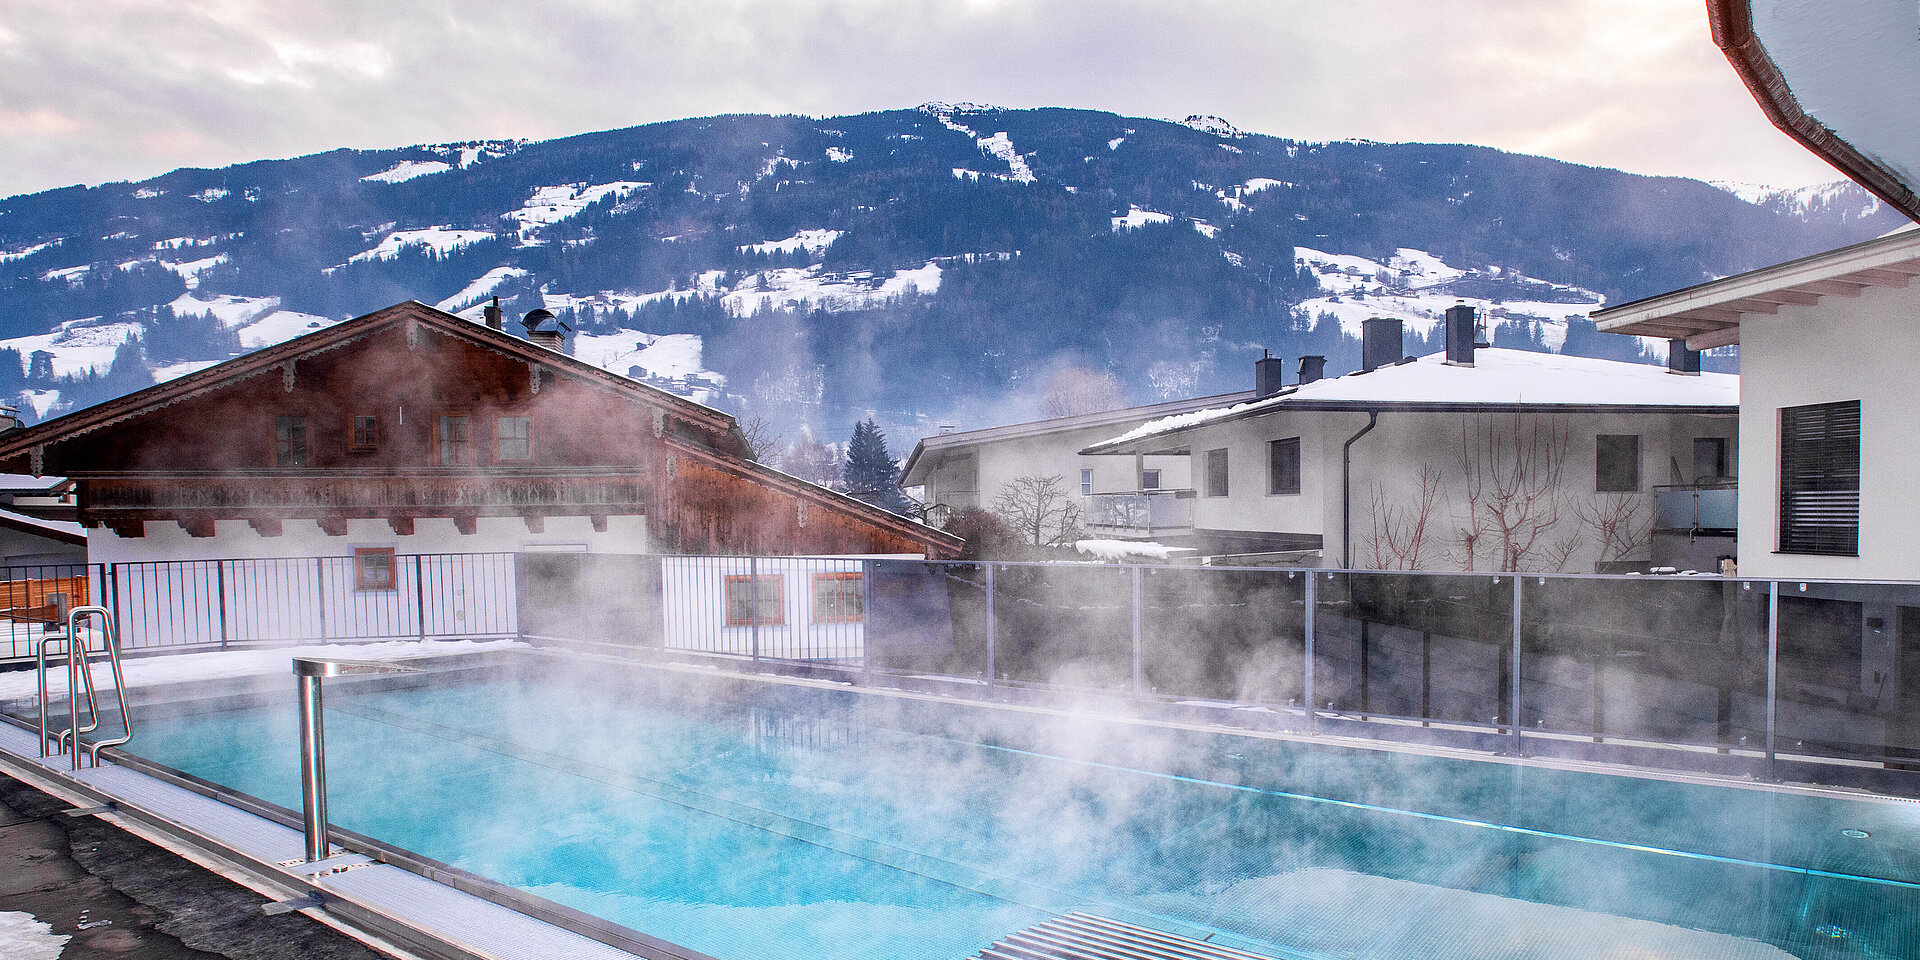 Pool im Winter | Der Pinzger Stumm